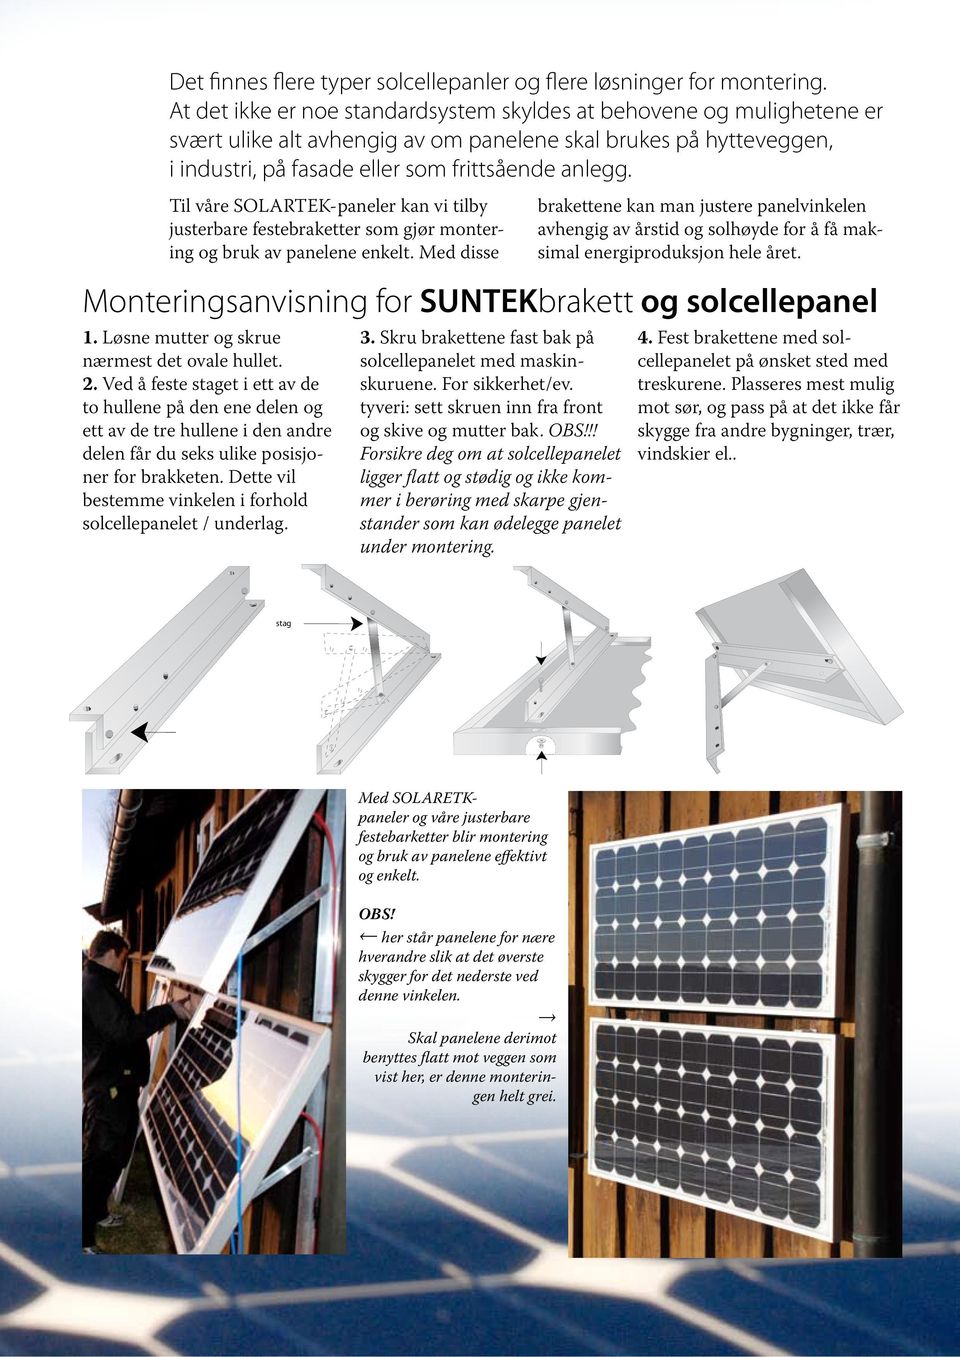 Til våre SOLARTEK-paneler kan vi tilby justerbare festebraketter som gjør montering og bruk av panelene enkelt.